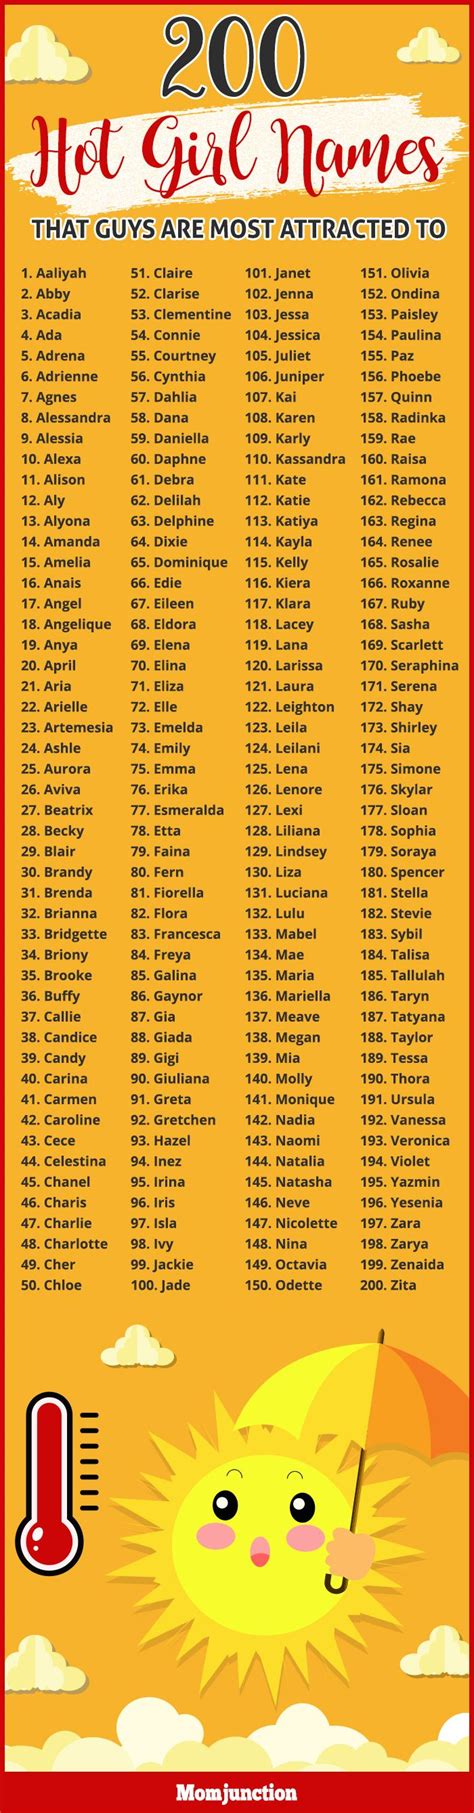 List Of Sexy Girl Names List Of Sexy Girl Names